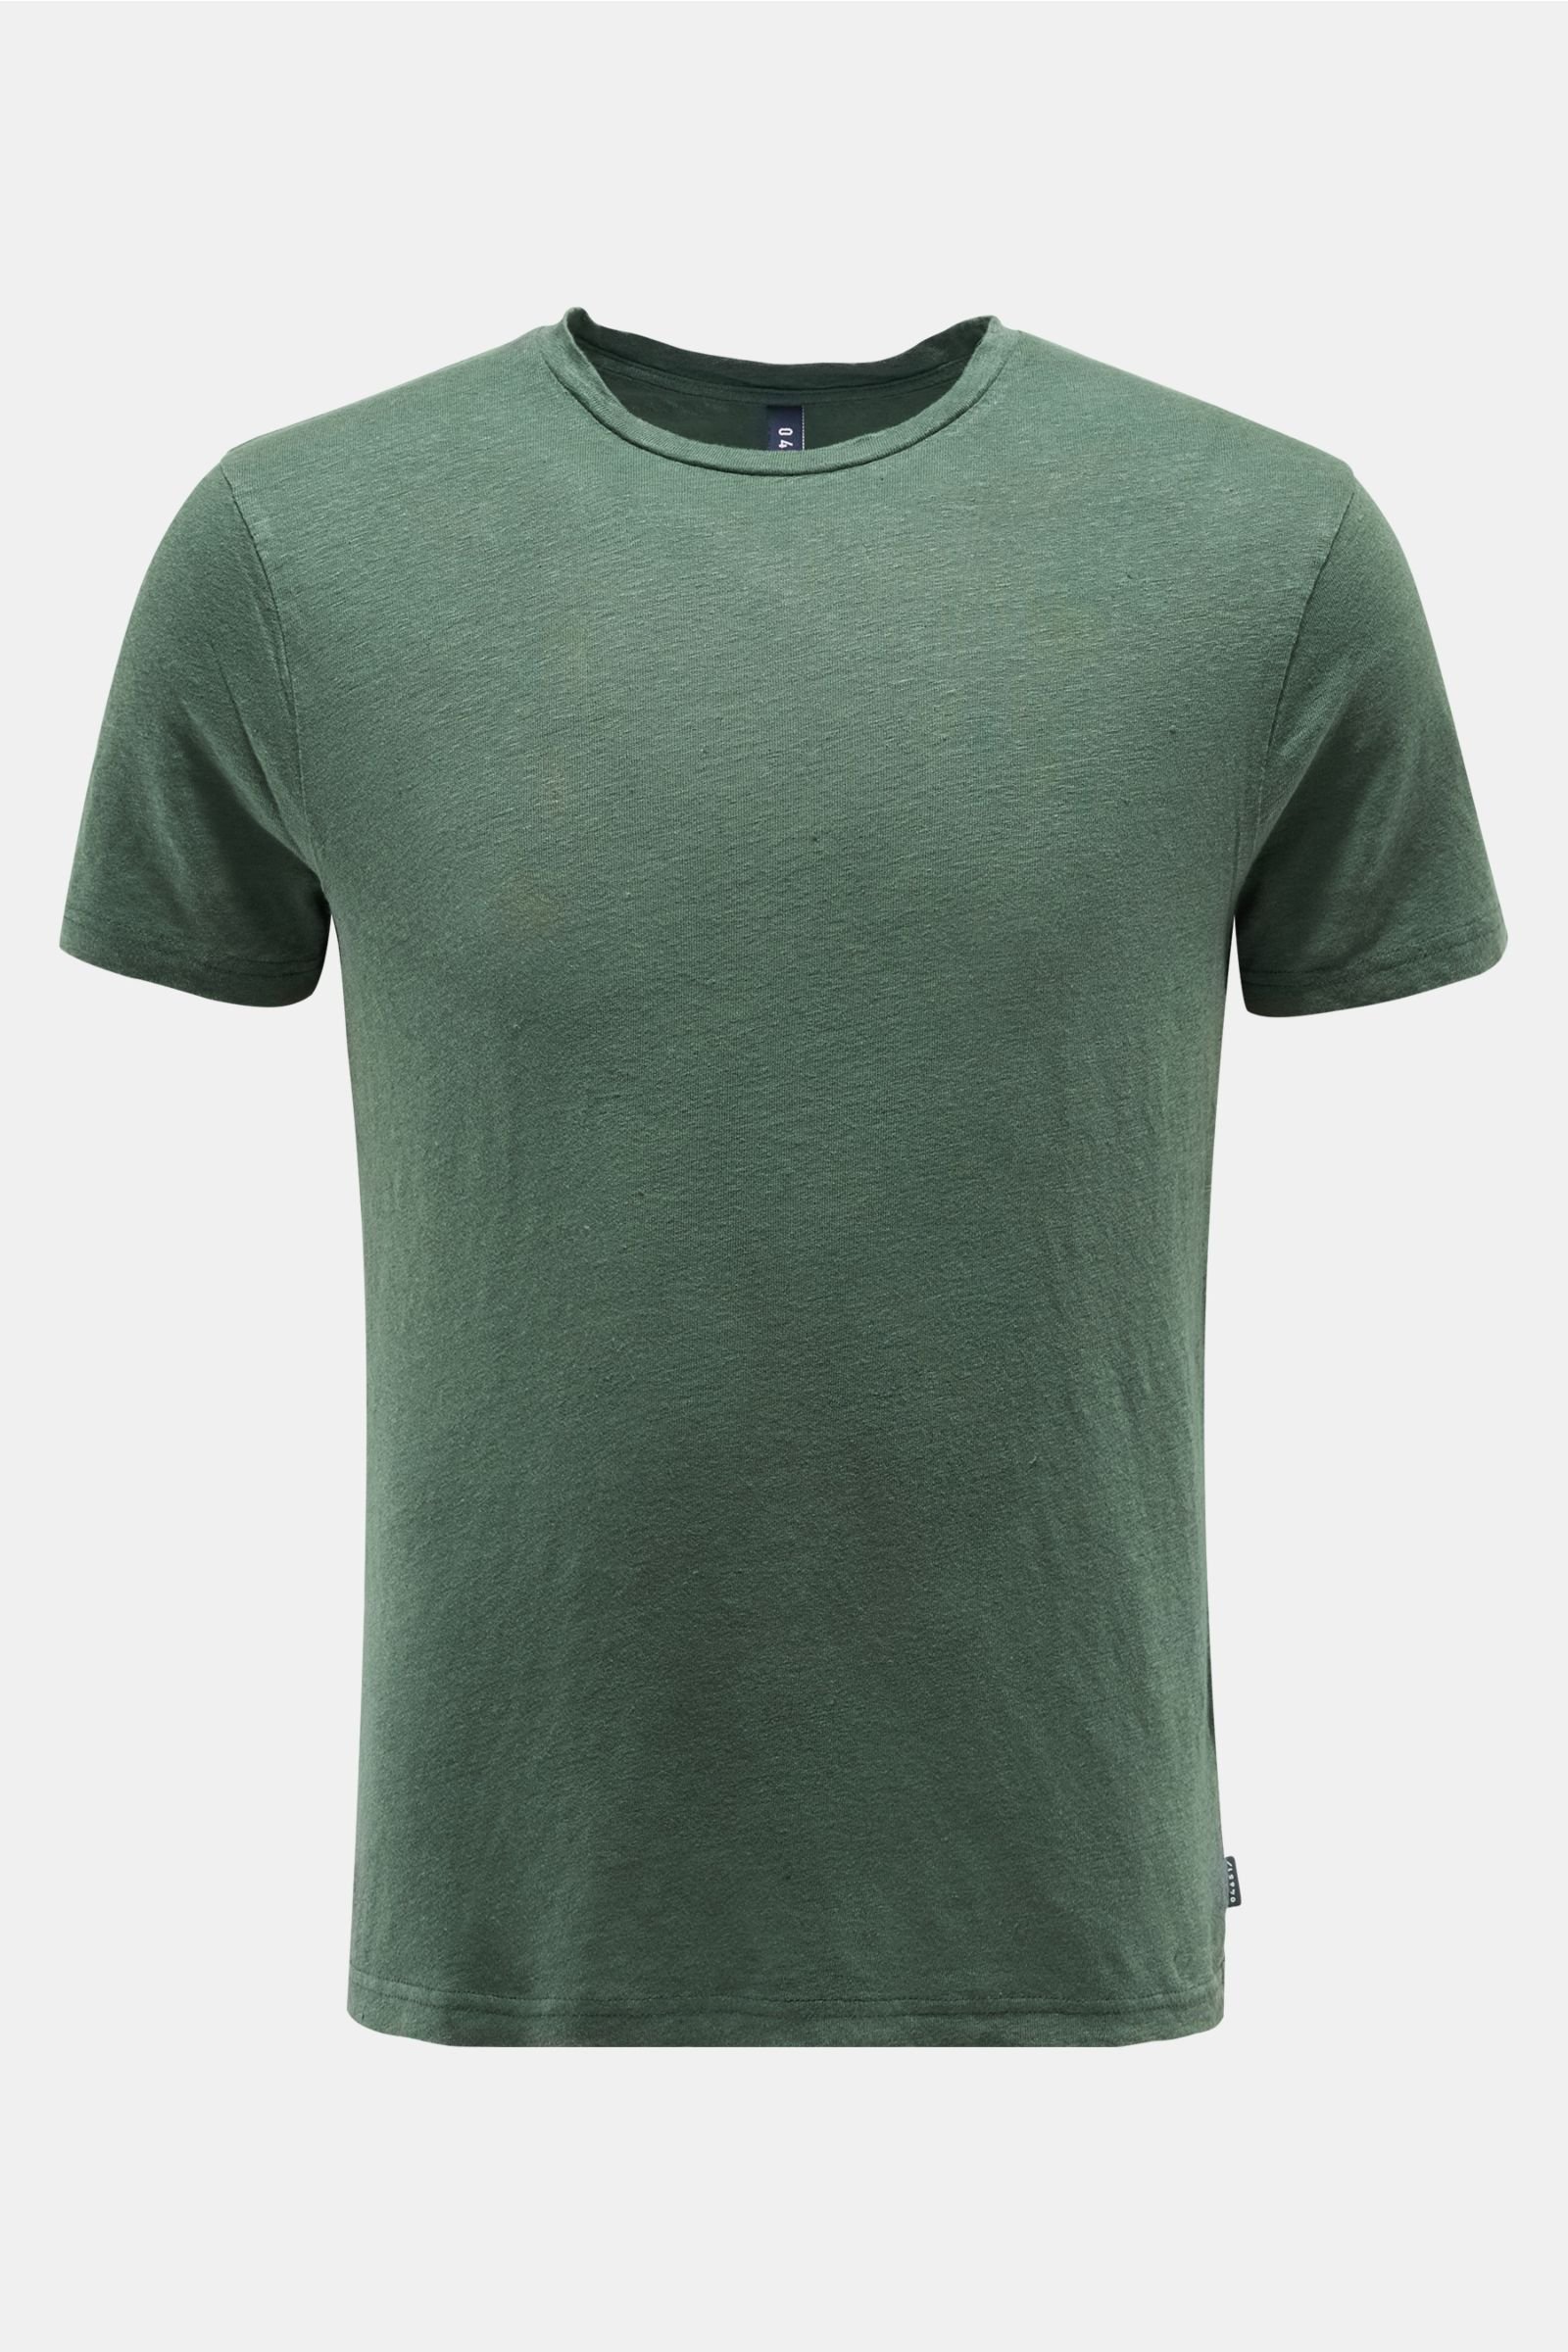 Leinen R-Neck T-Shirt dunkelgrün